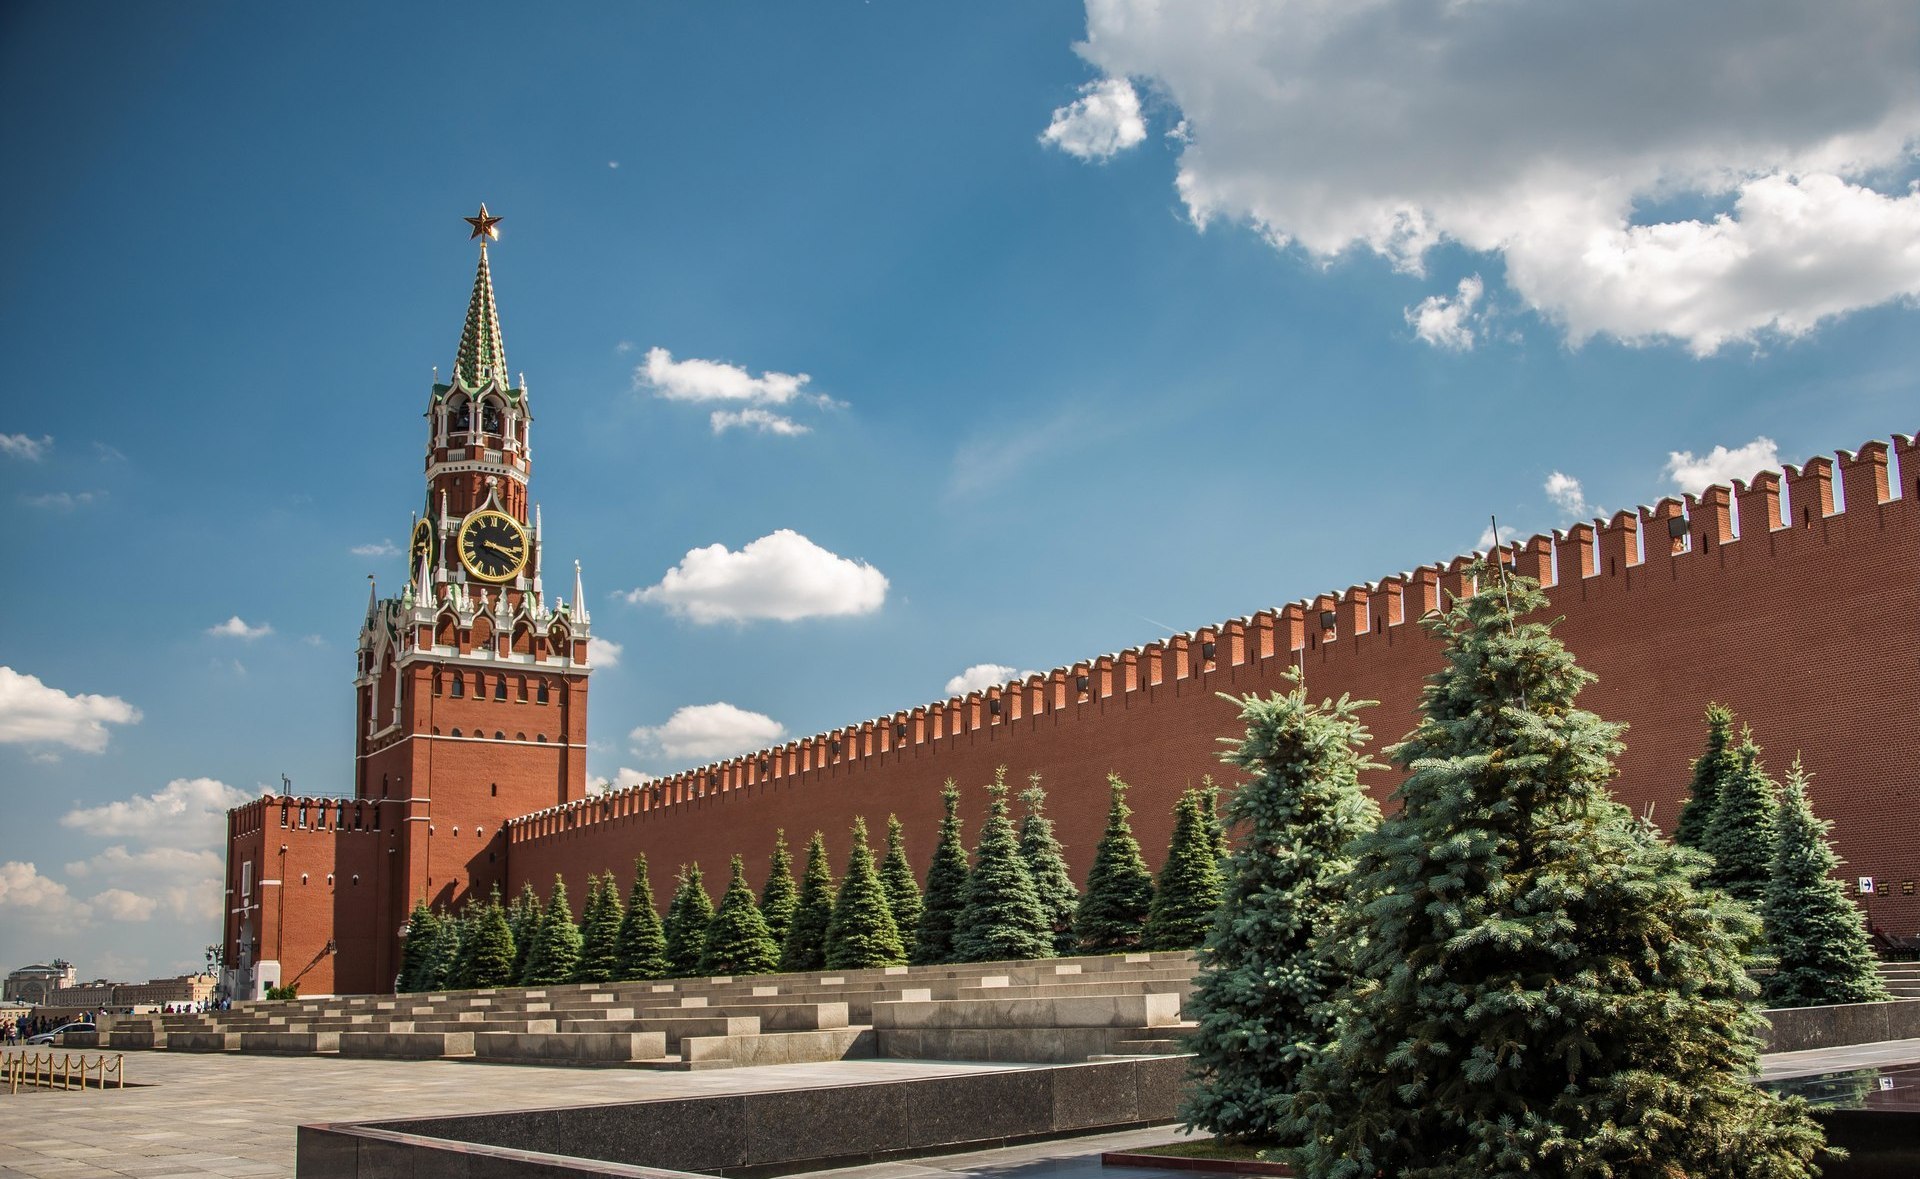 фото кремлевской стены в москве